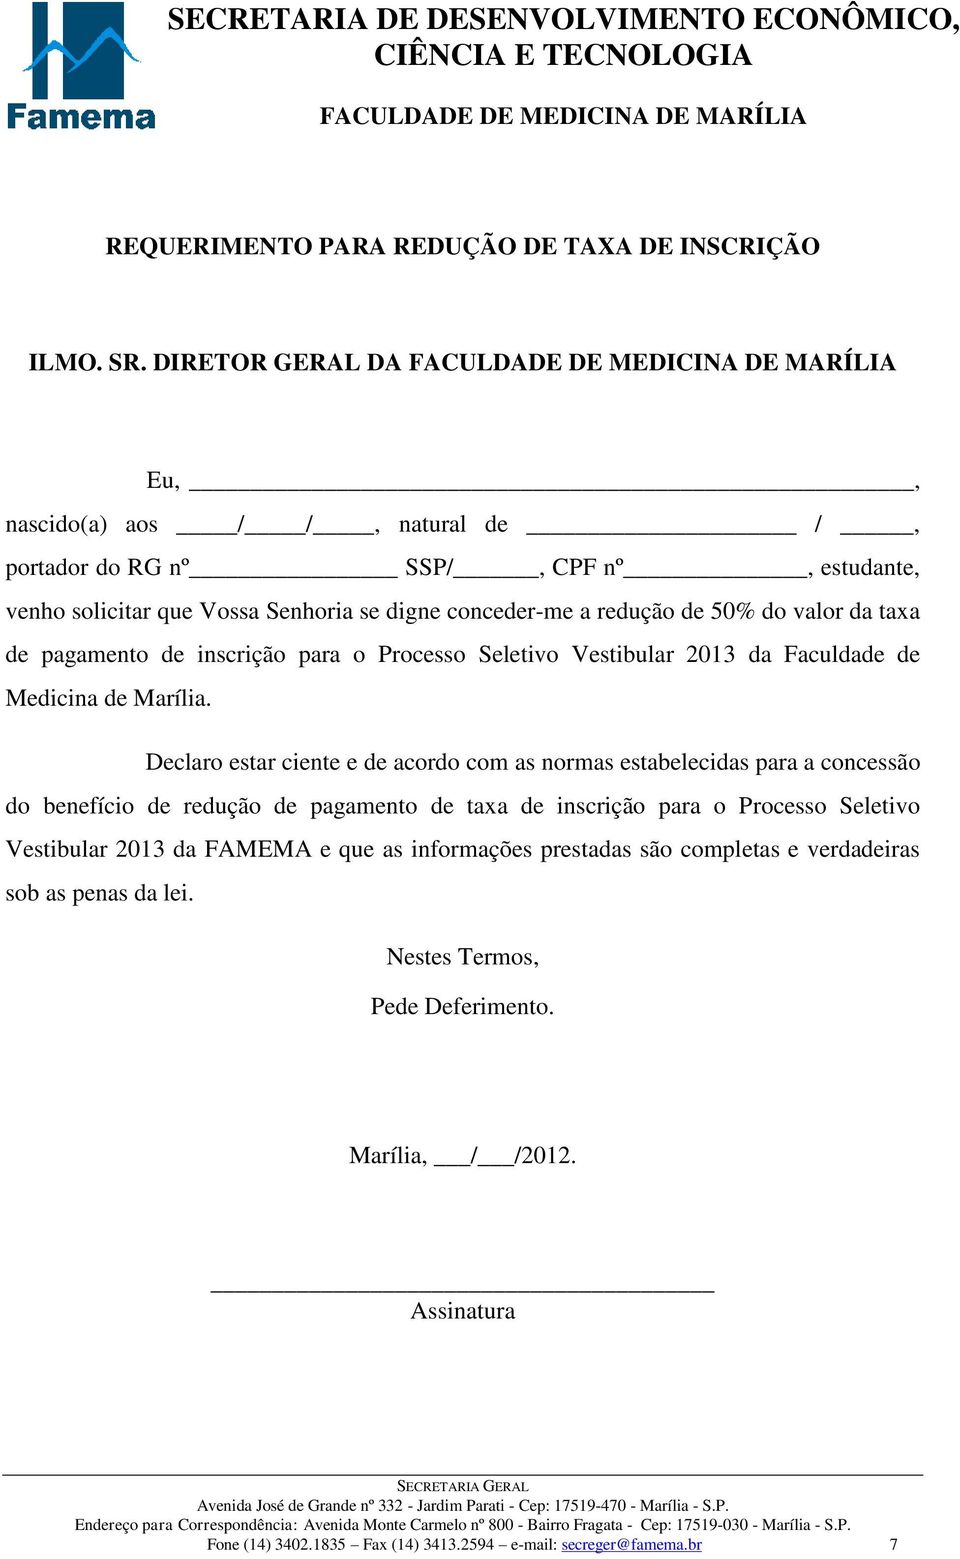 taxa de pagamento de inscrição para o Processo Seletivo Vestibular 2013 da Faculdade de Medicina de Marília.